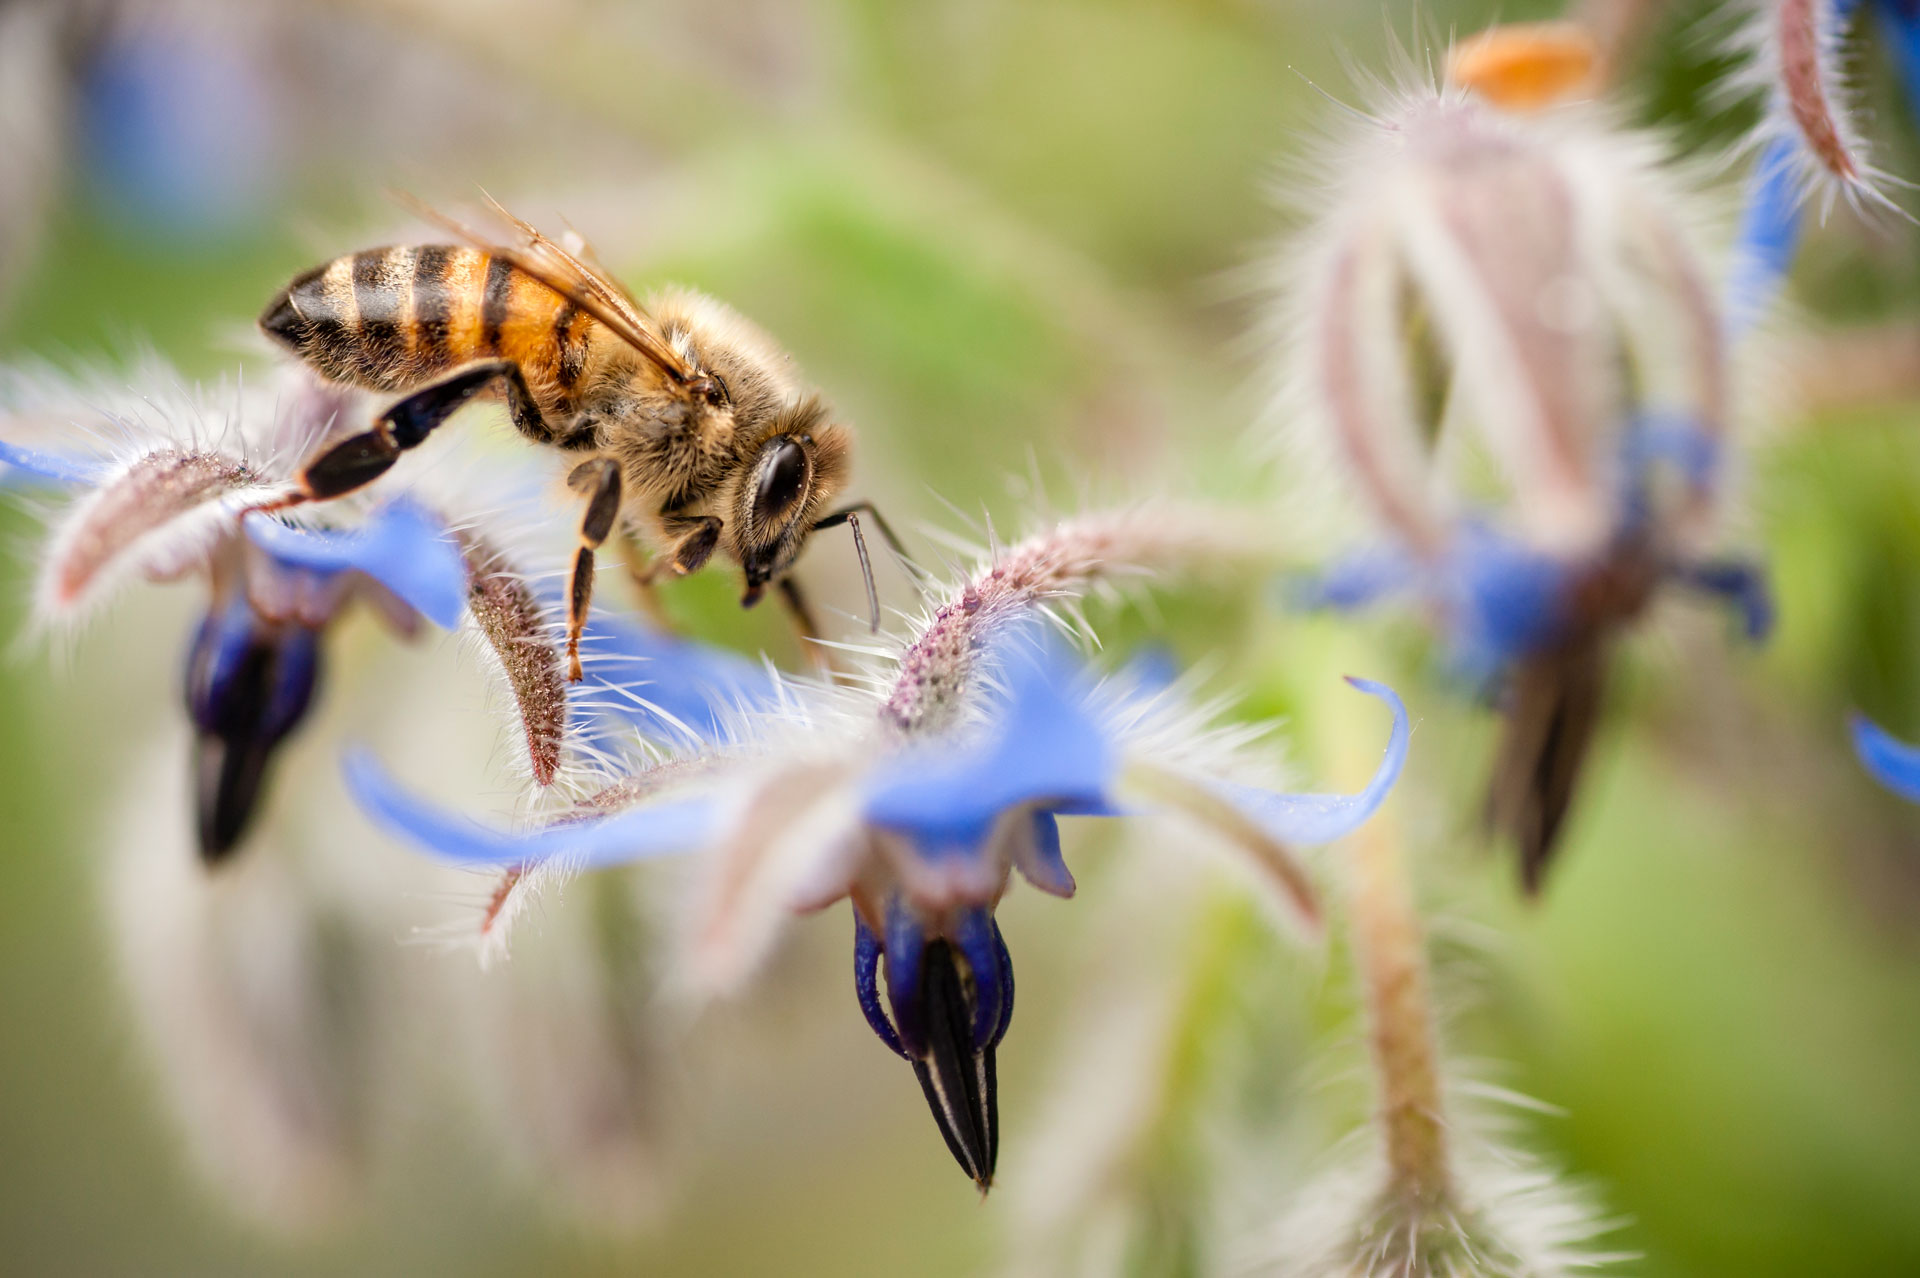 Les abeilles&nbsp;reconnaissent les membres de leur ruche grâce à des molécules présentes sur leur peau. © alessandrozocc